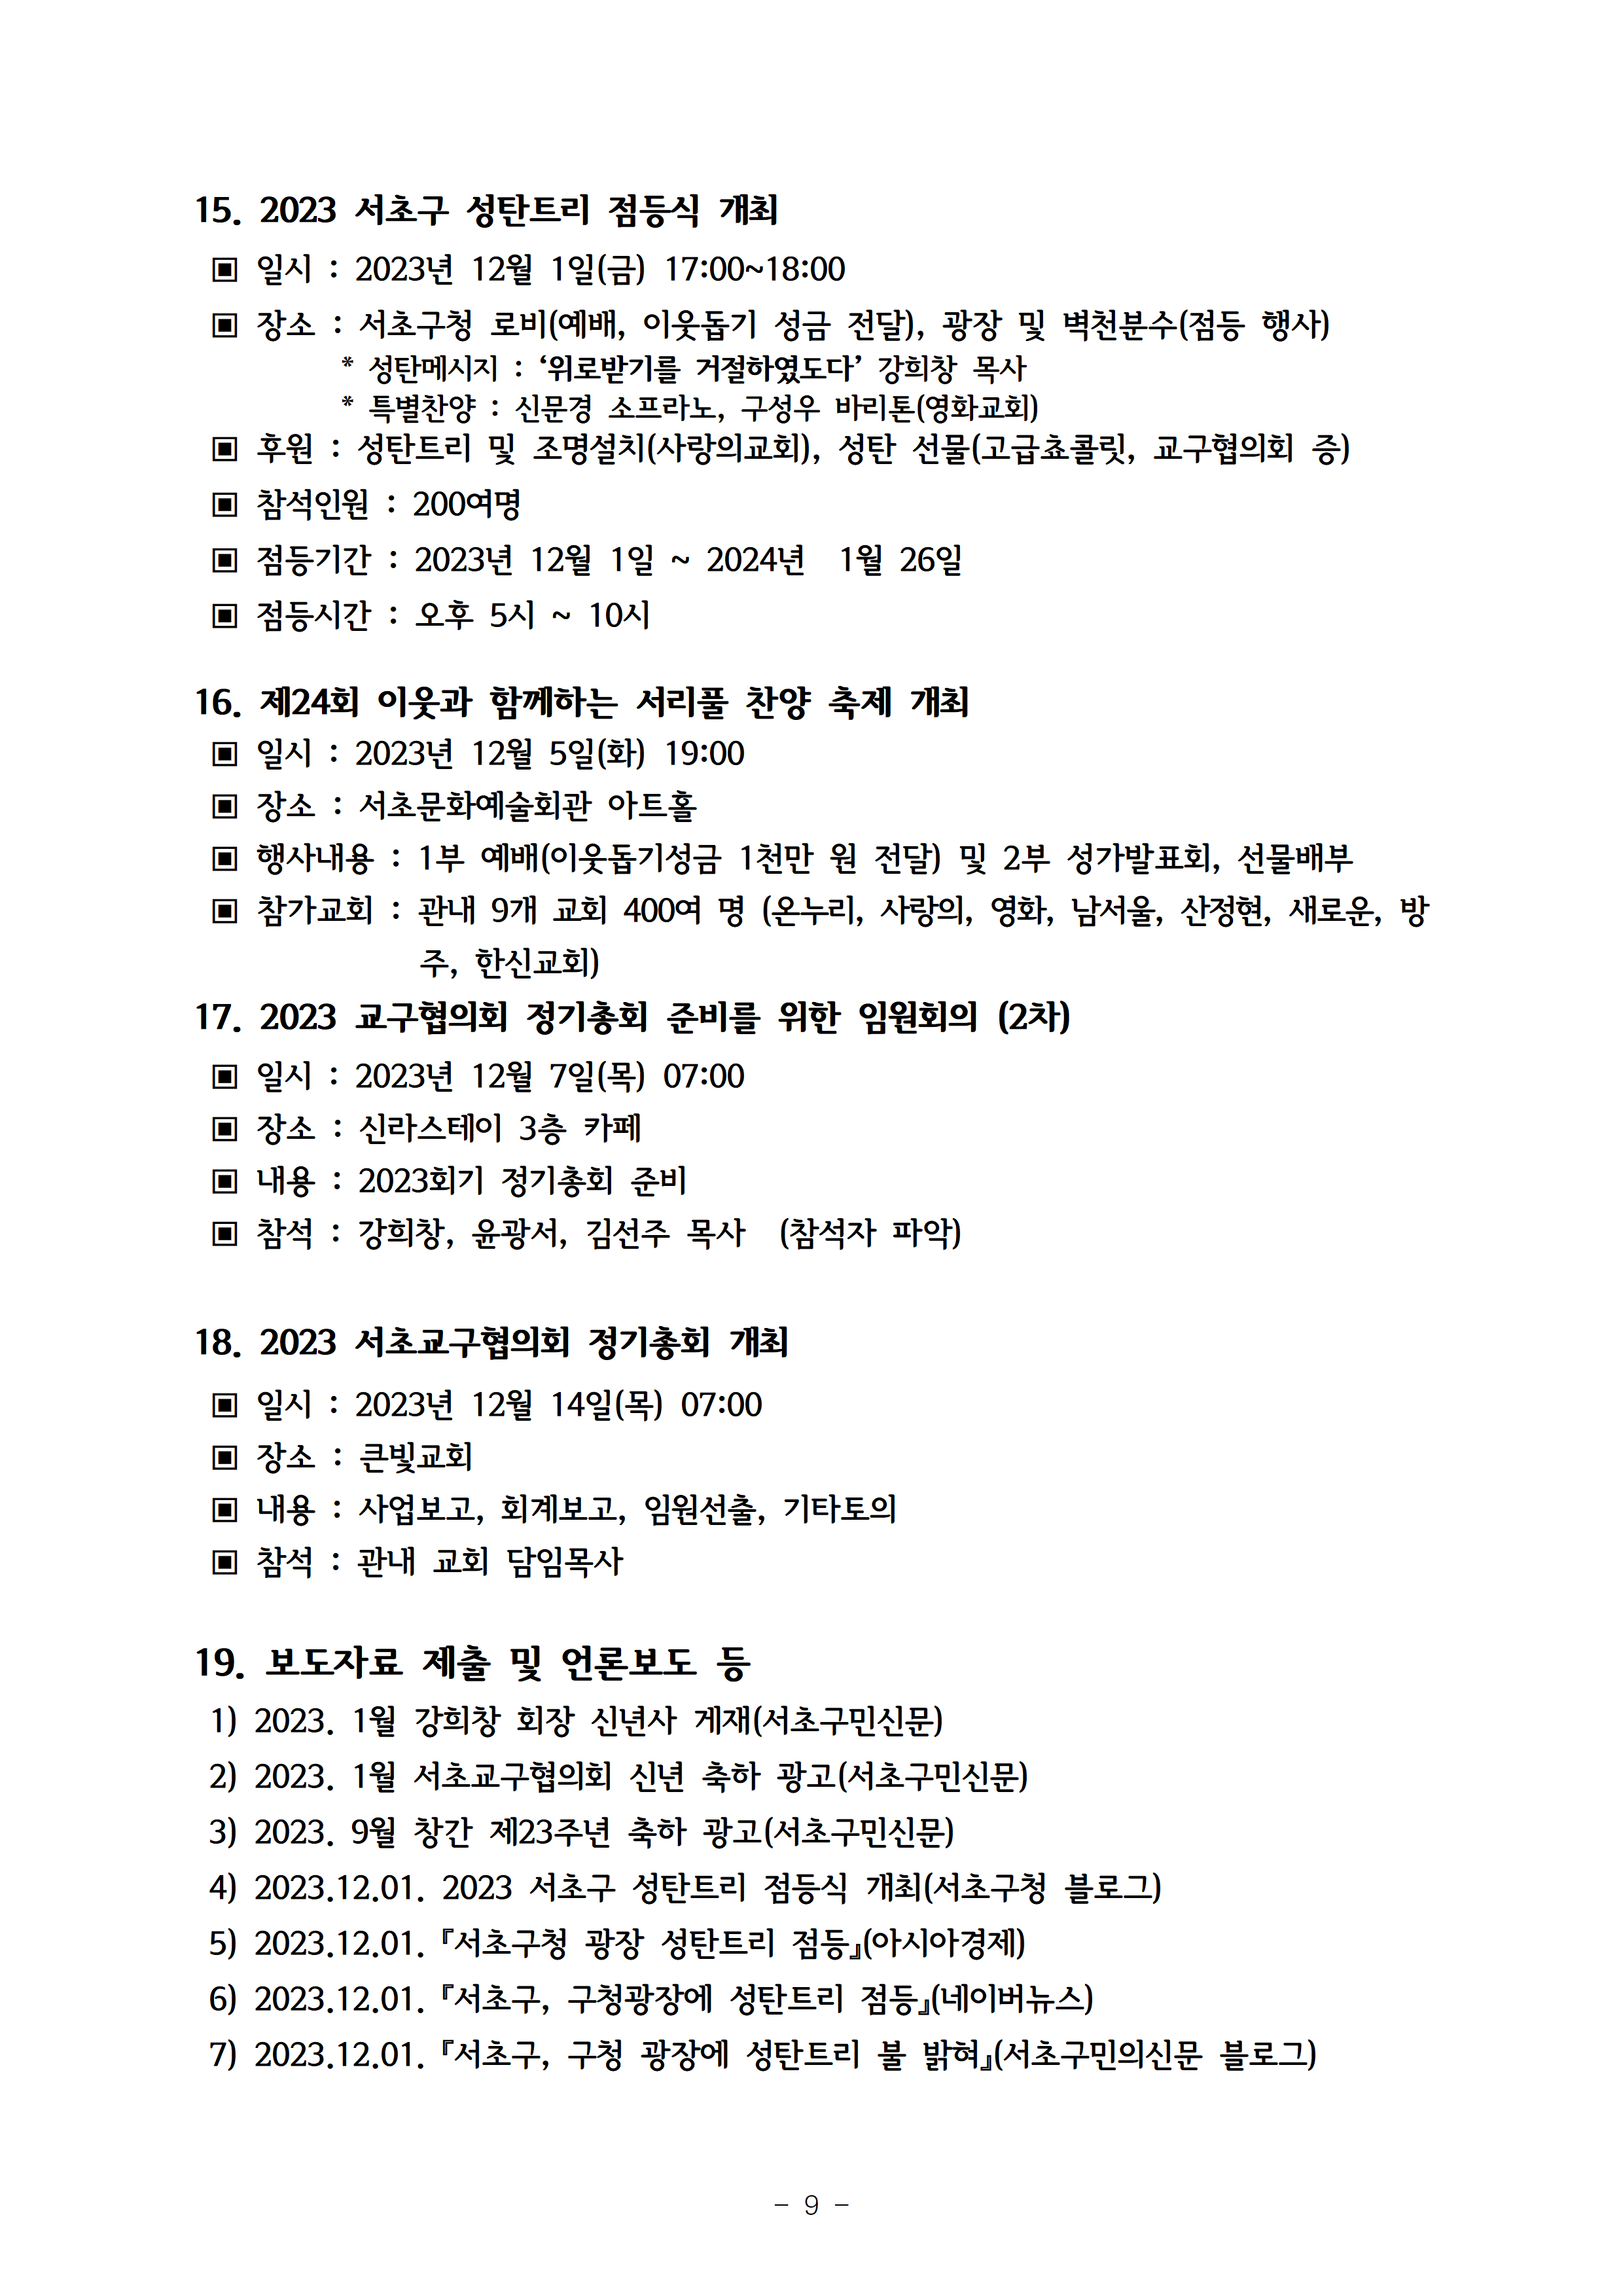 2023회기 서초교구협의회 정기총회자료(12.14.)010.png